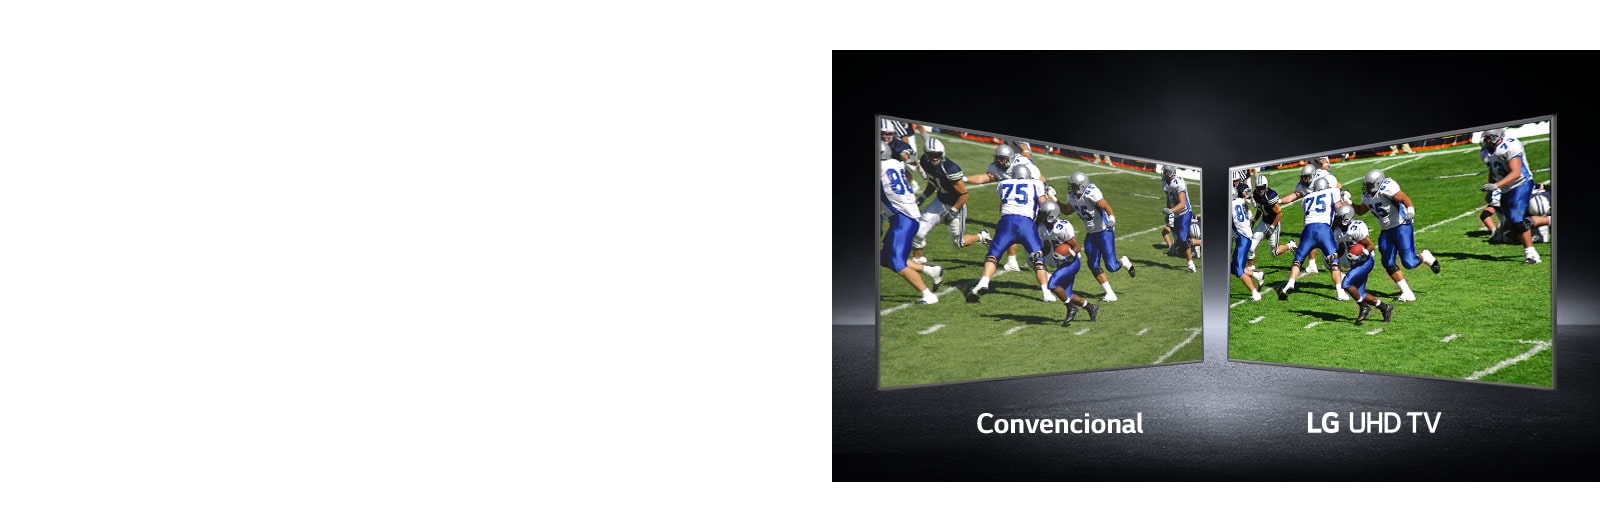 Una imagen de jugadores jugando en un campo de fútbol se muestra en las vistas. Una se muestra en una pantalla convencional y la otra en una TV UHD.